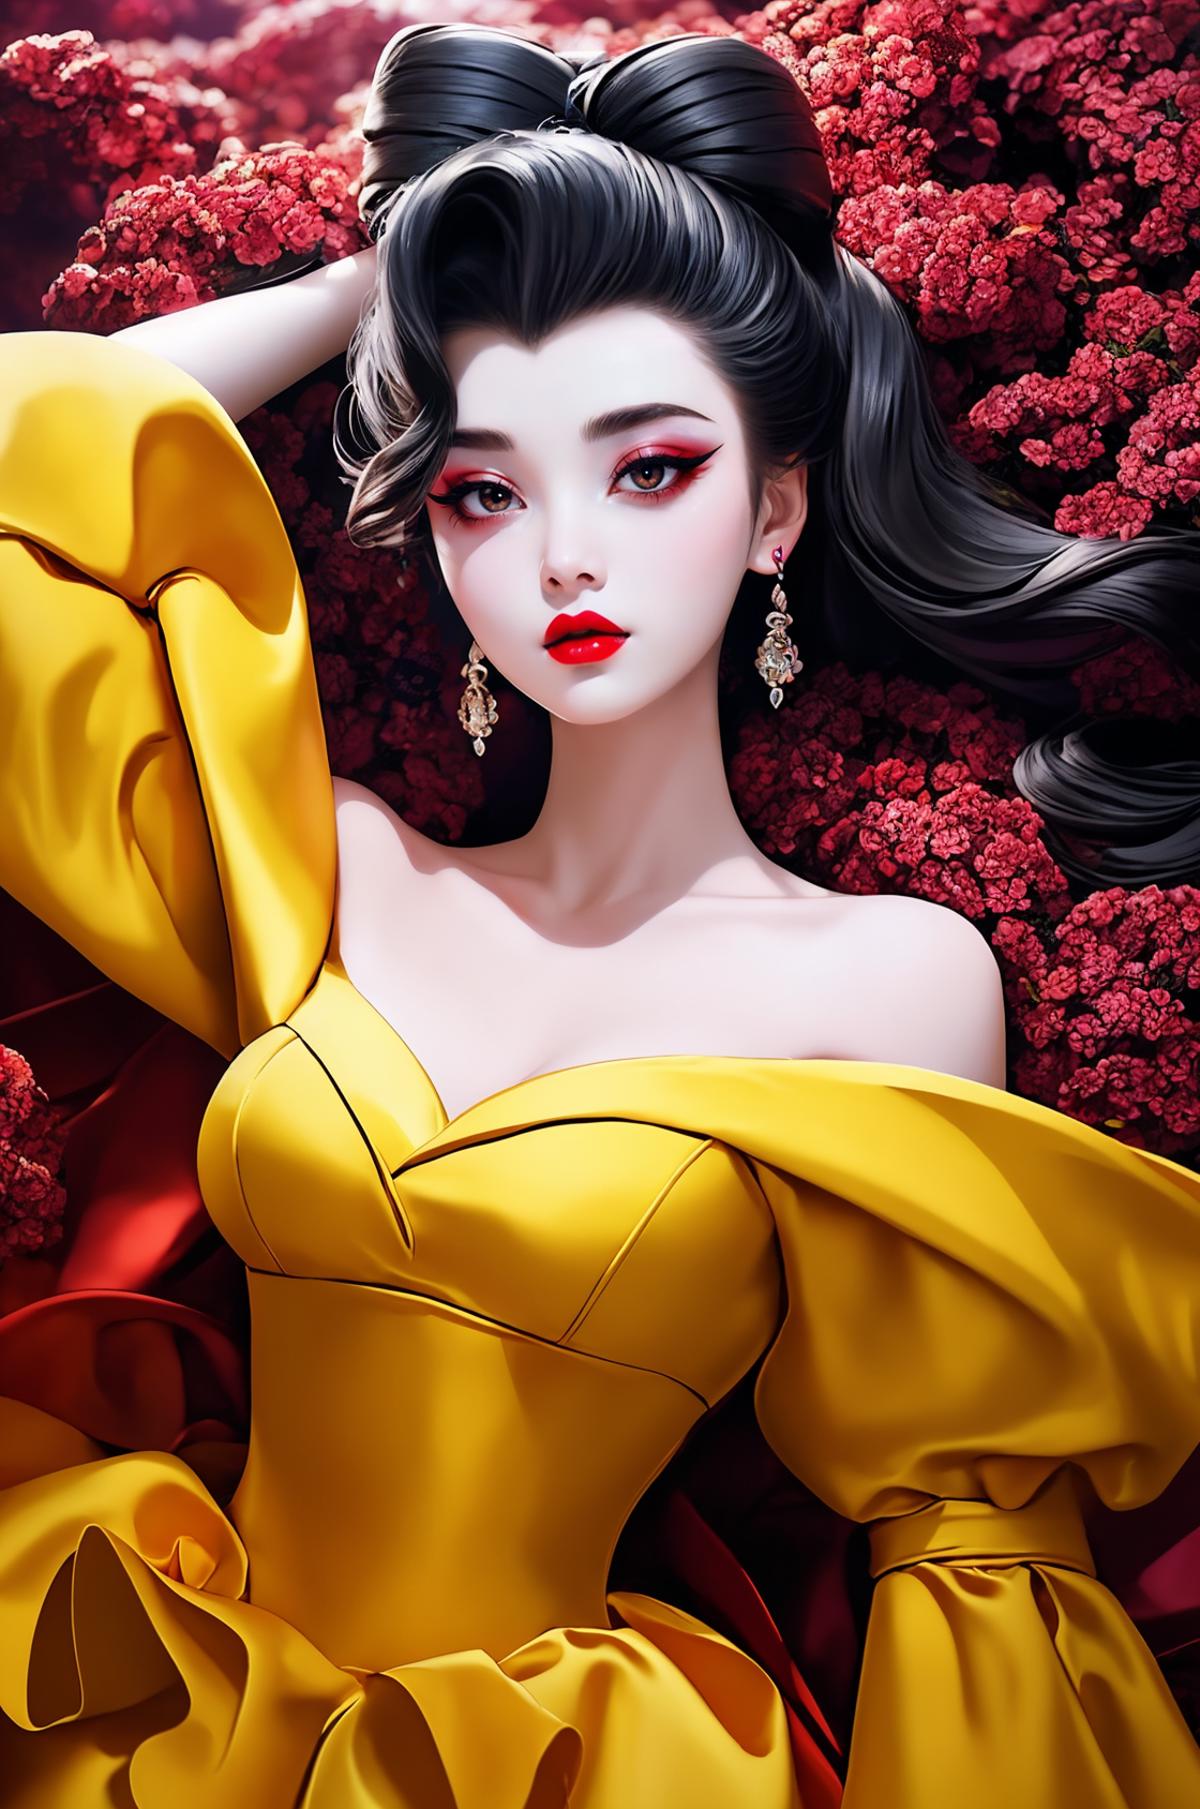 Geisha Makeup image by headupdef